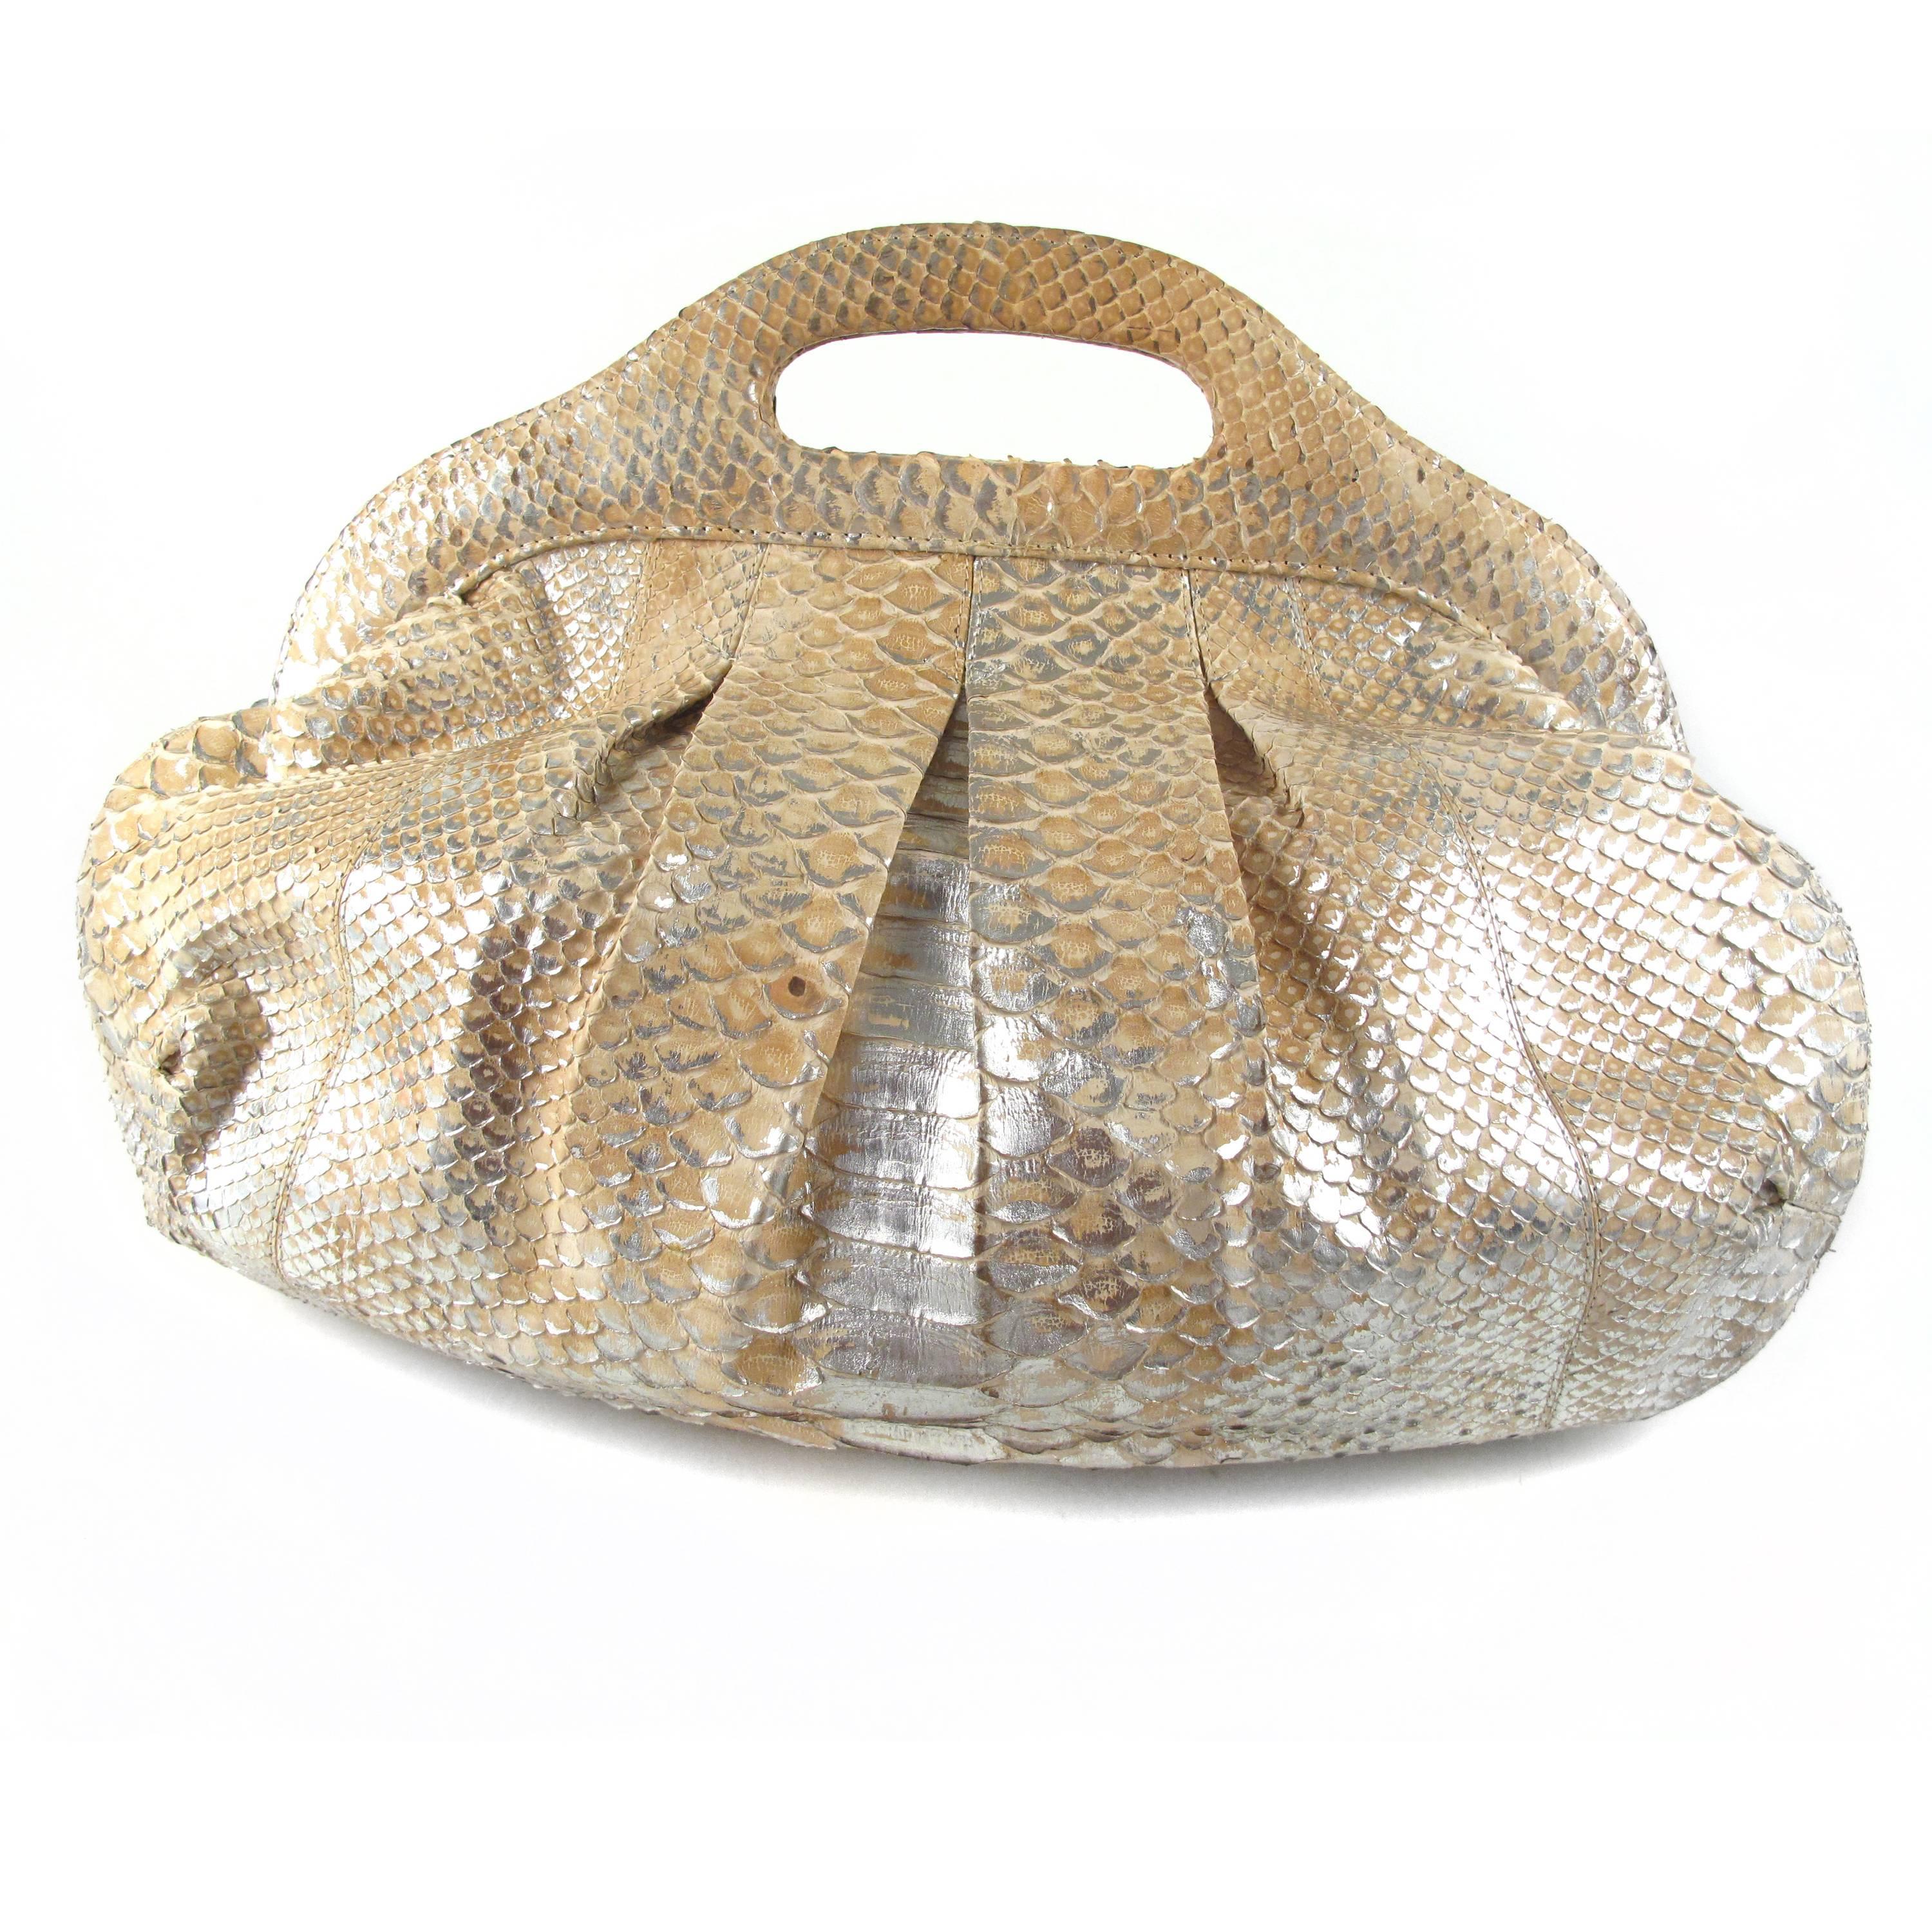 Nancy Gonzalez - Large Metallic Python Cutout Handbag

Color: Gold

Material: Python

------------------------------------------------------------

Details:

- interior zip and slit pockets

- item # KB21

Condition: Excellent